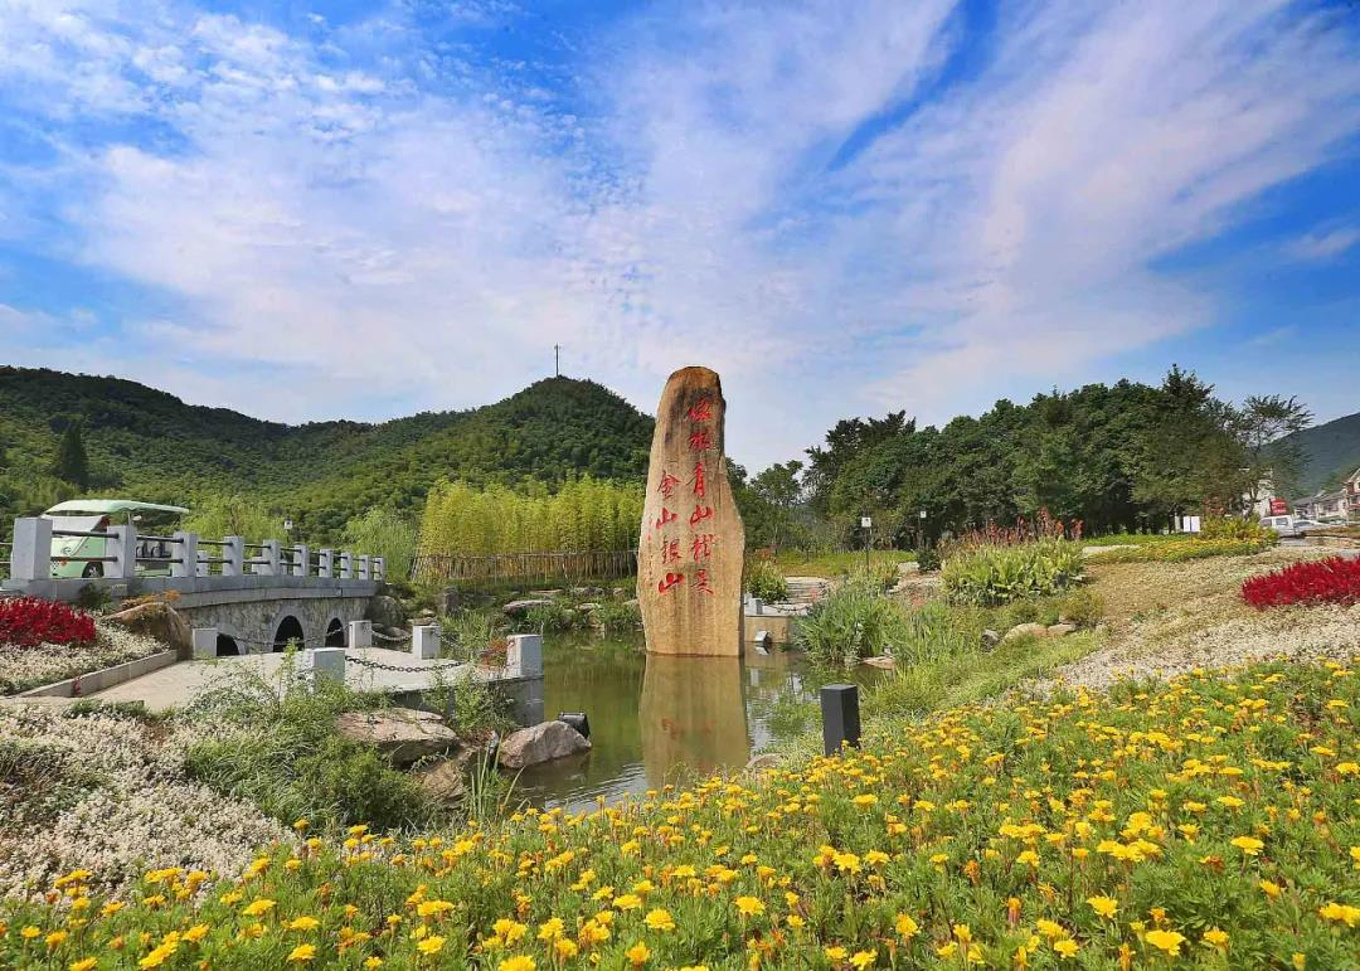 【携程攻略】徐州潘安湖国家湿地公园景点,中国好公园，最美潘安湖。不去不知道，去了才知道，原来别人眼中不起…